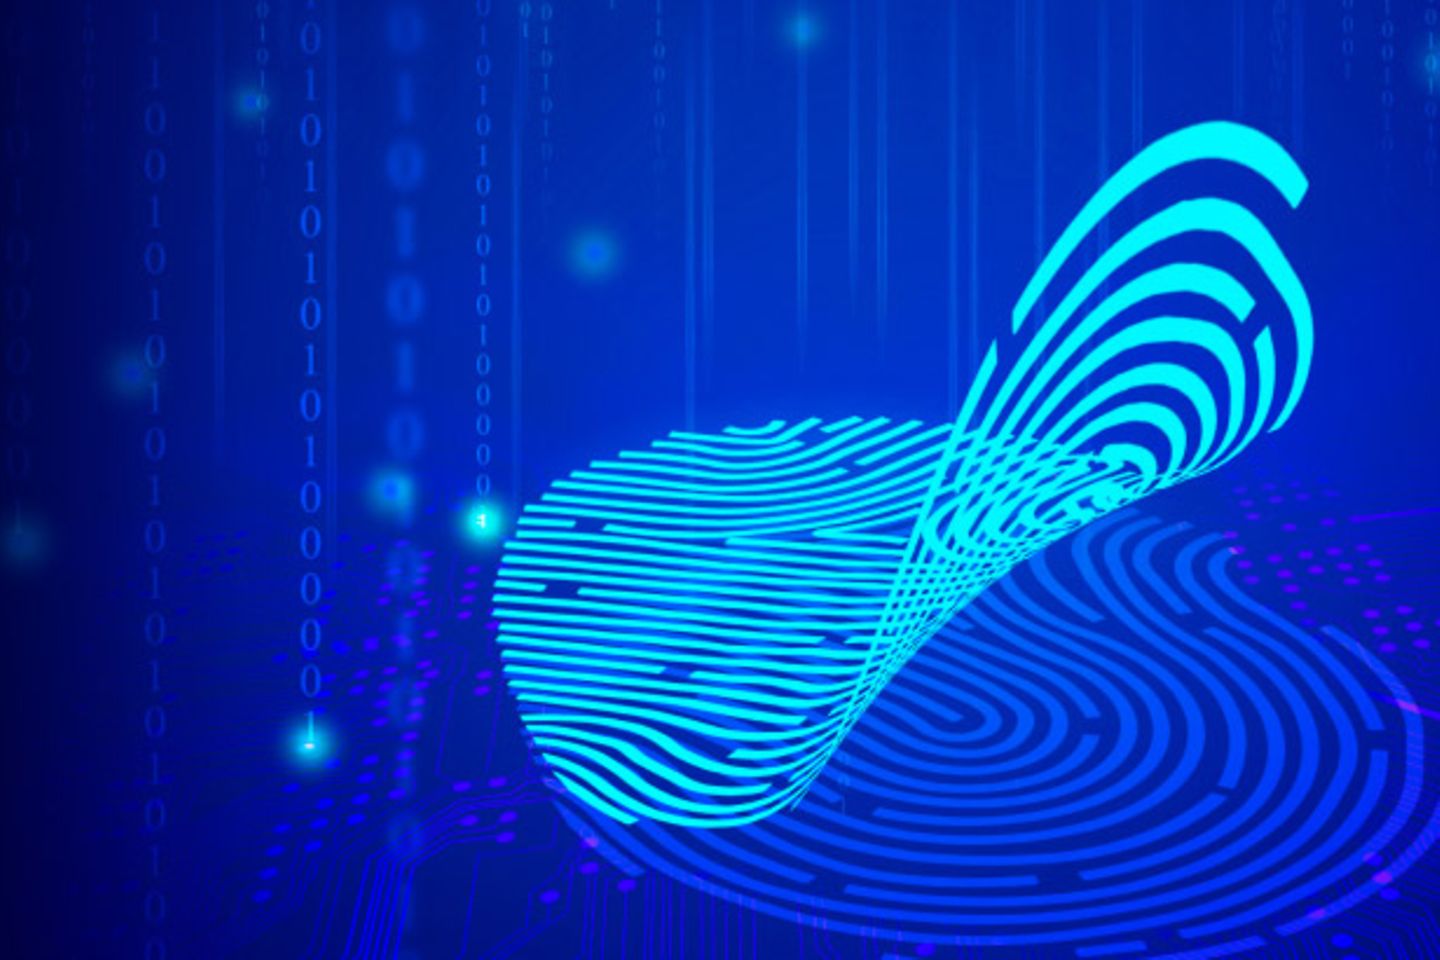 Digital fingerprint on a blue background